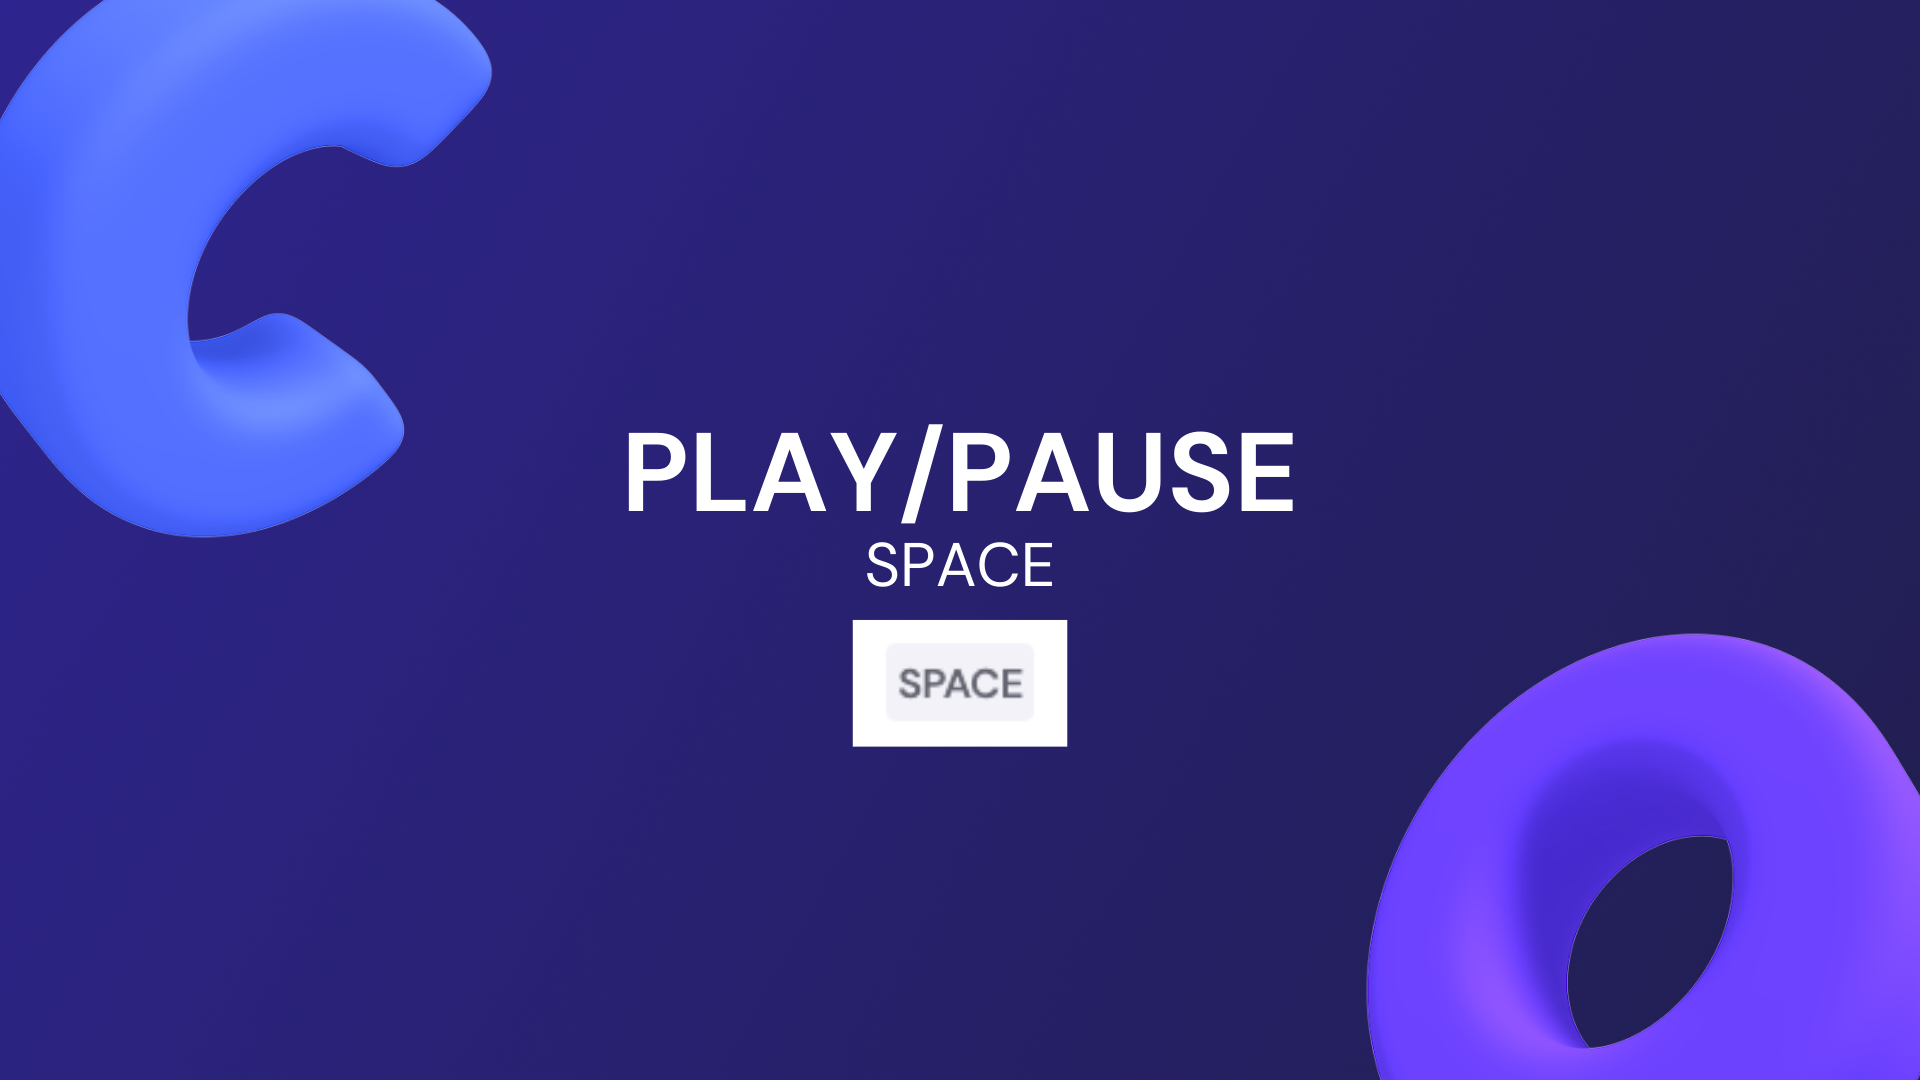 Play/pause